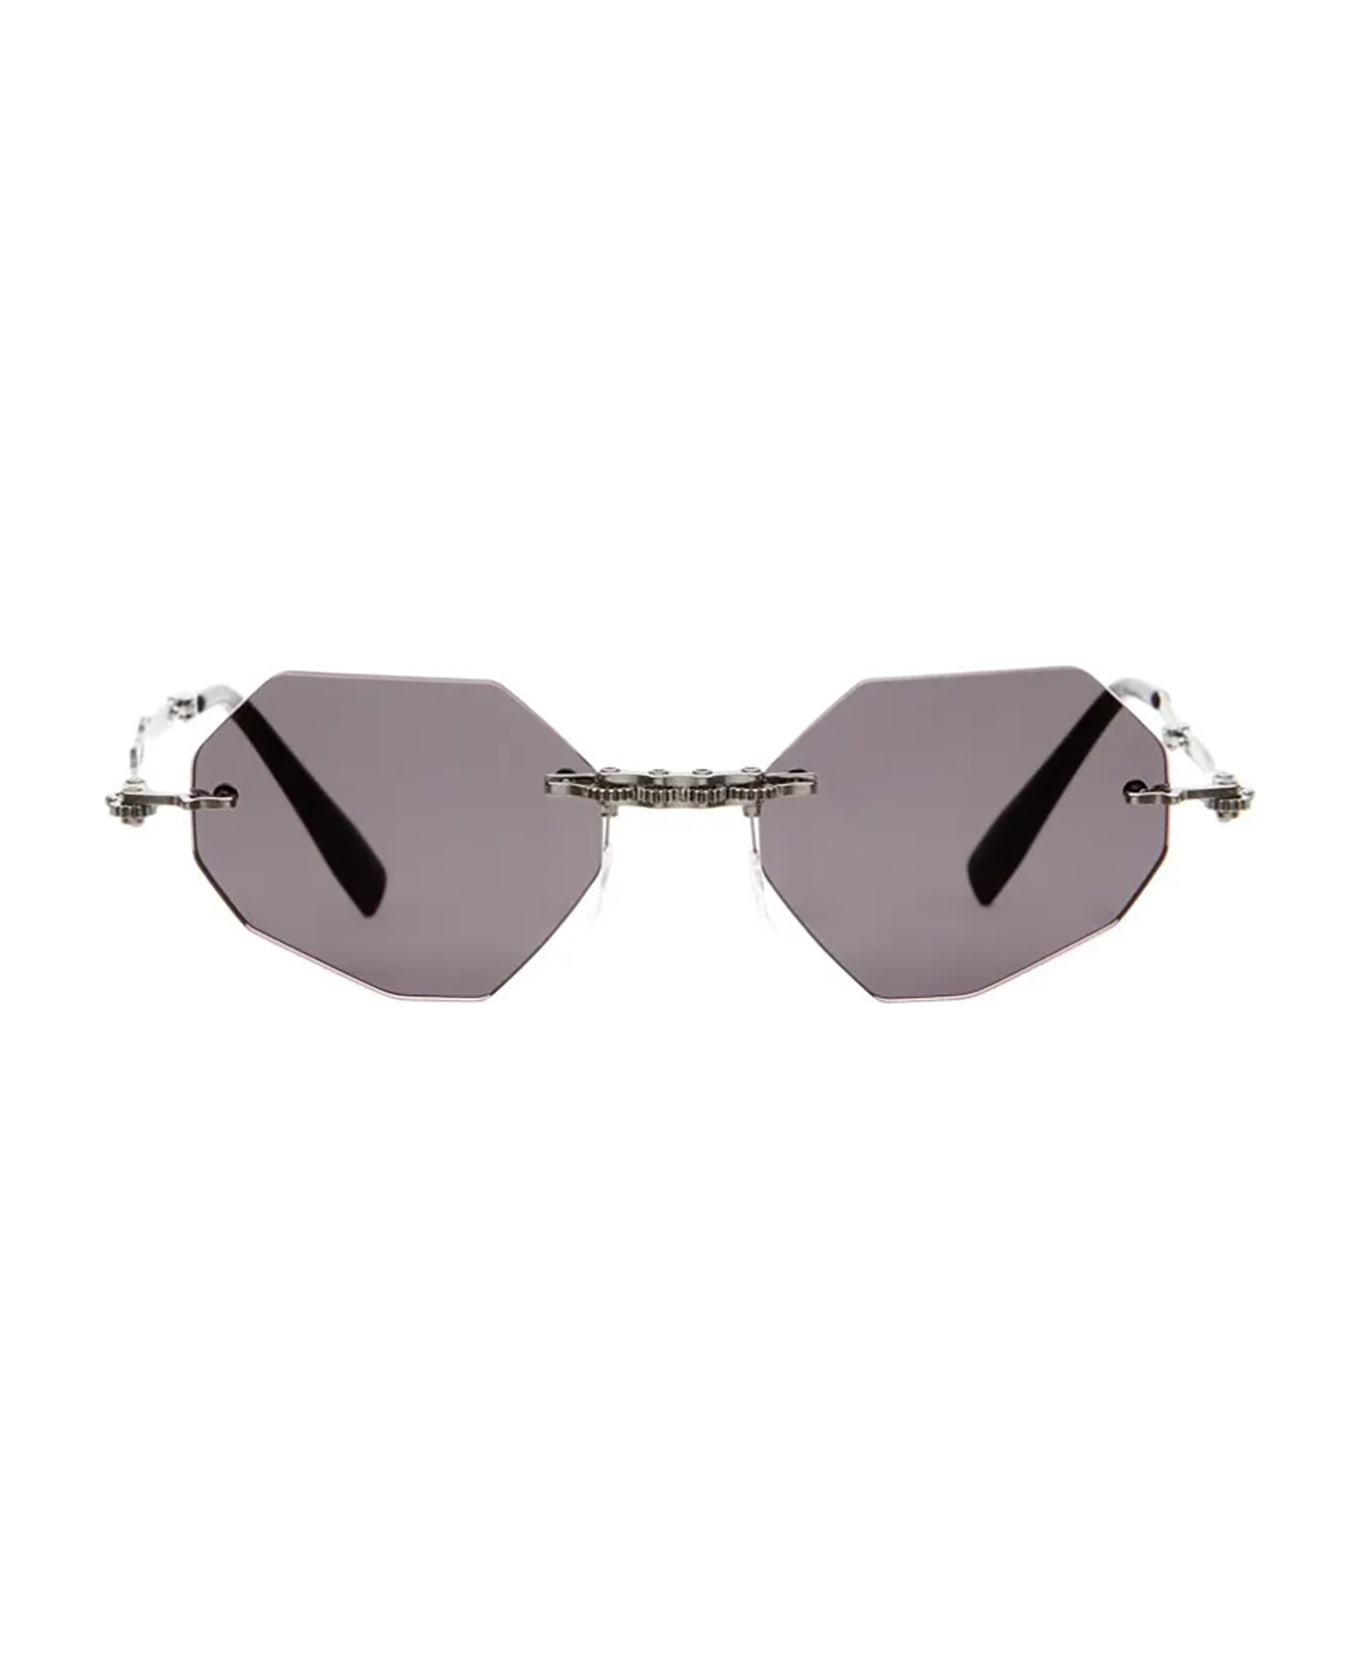 Kuboraum H44 Sunglasses - Bb Grey